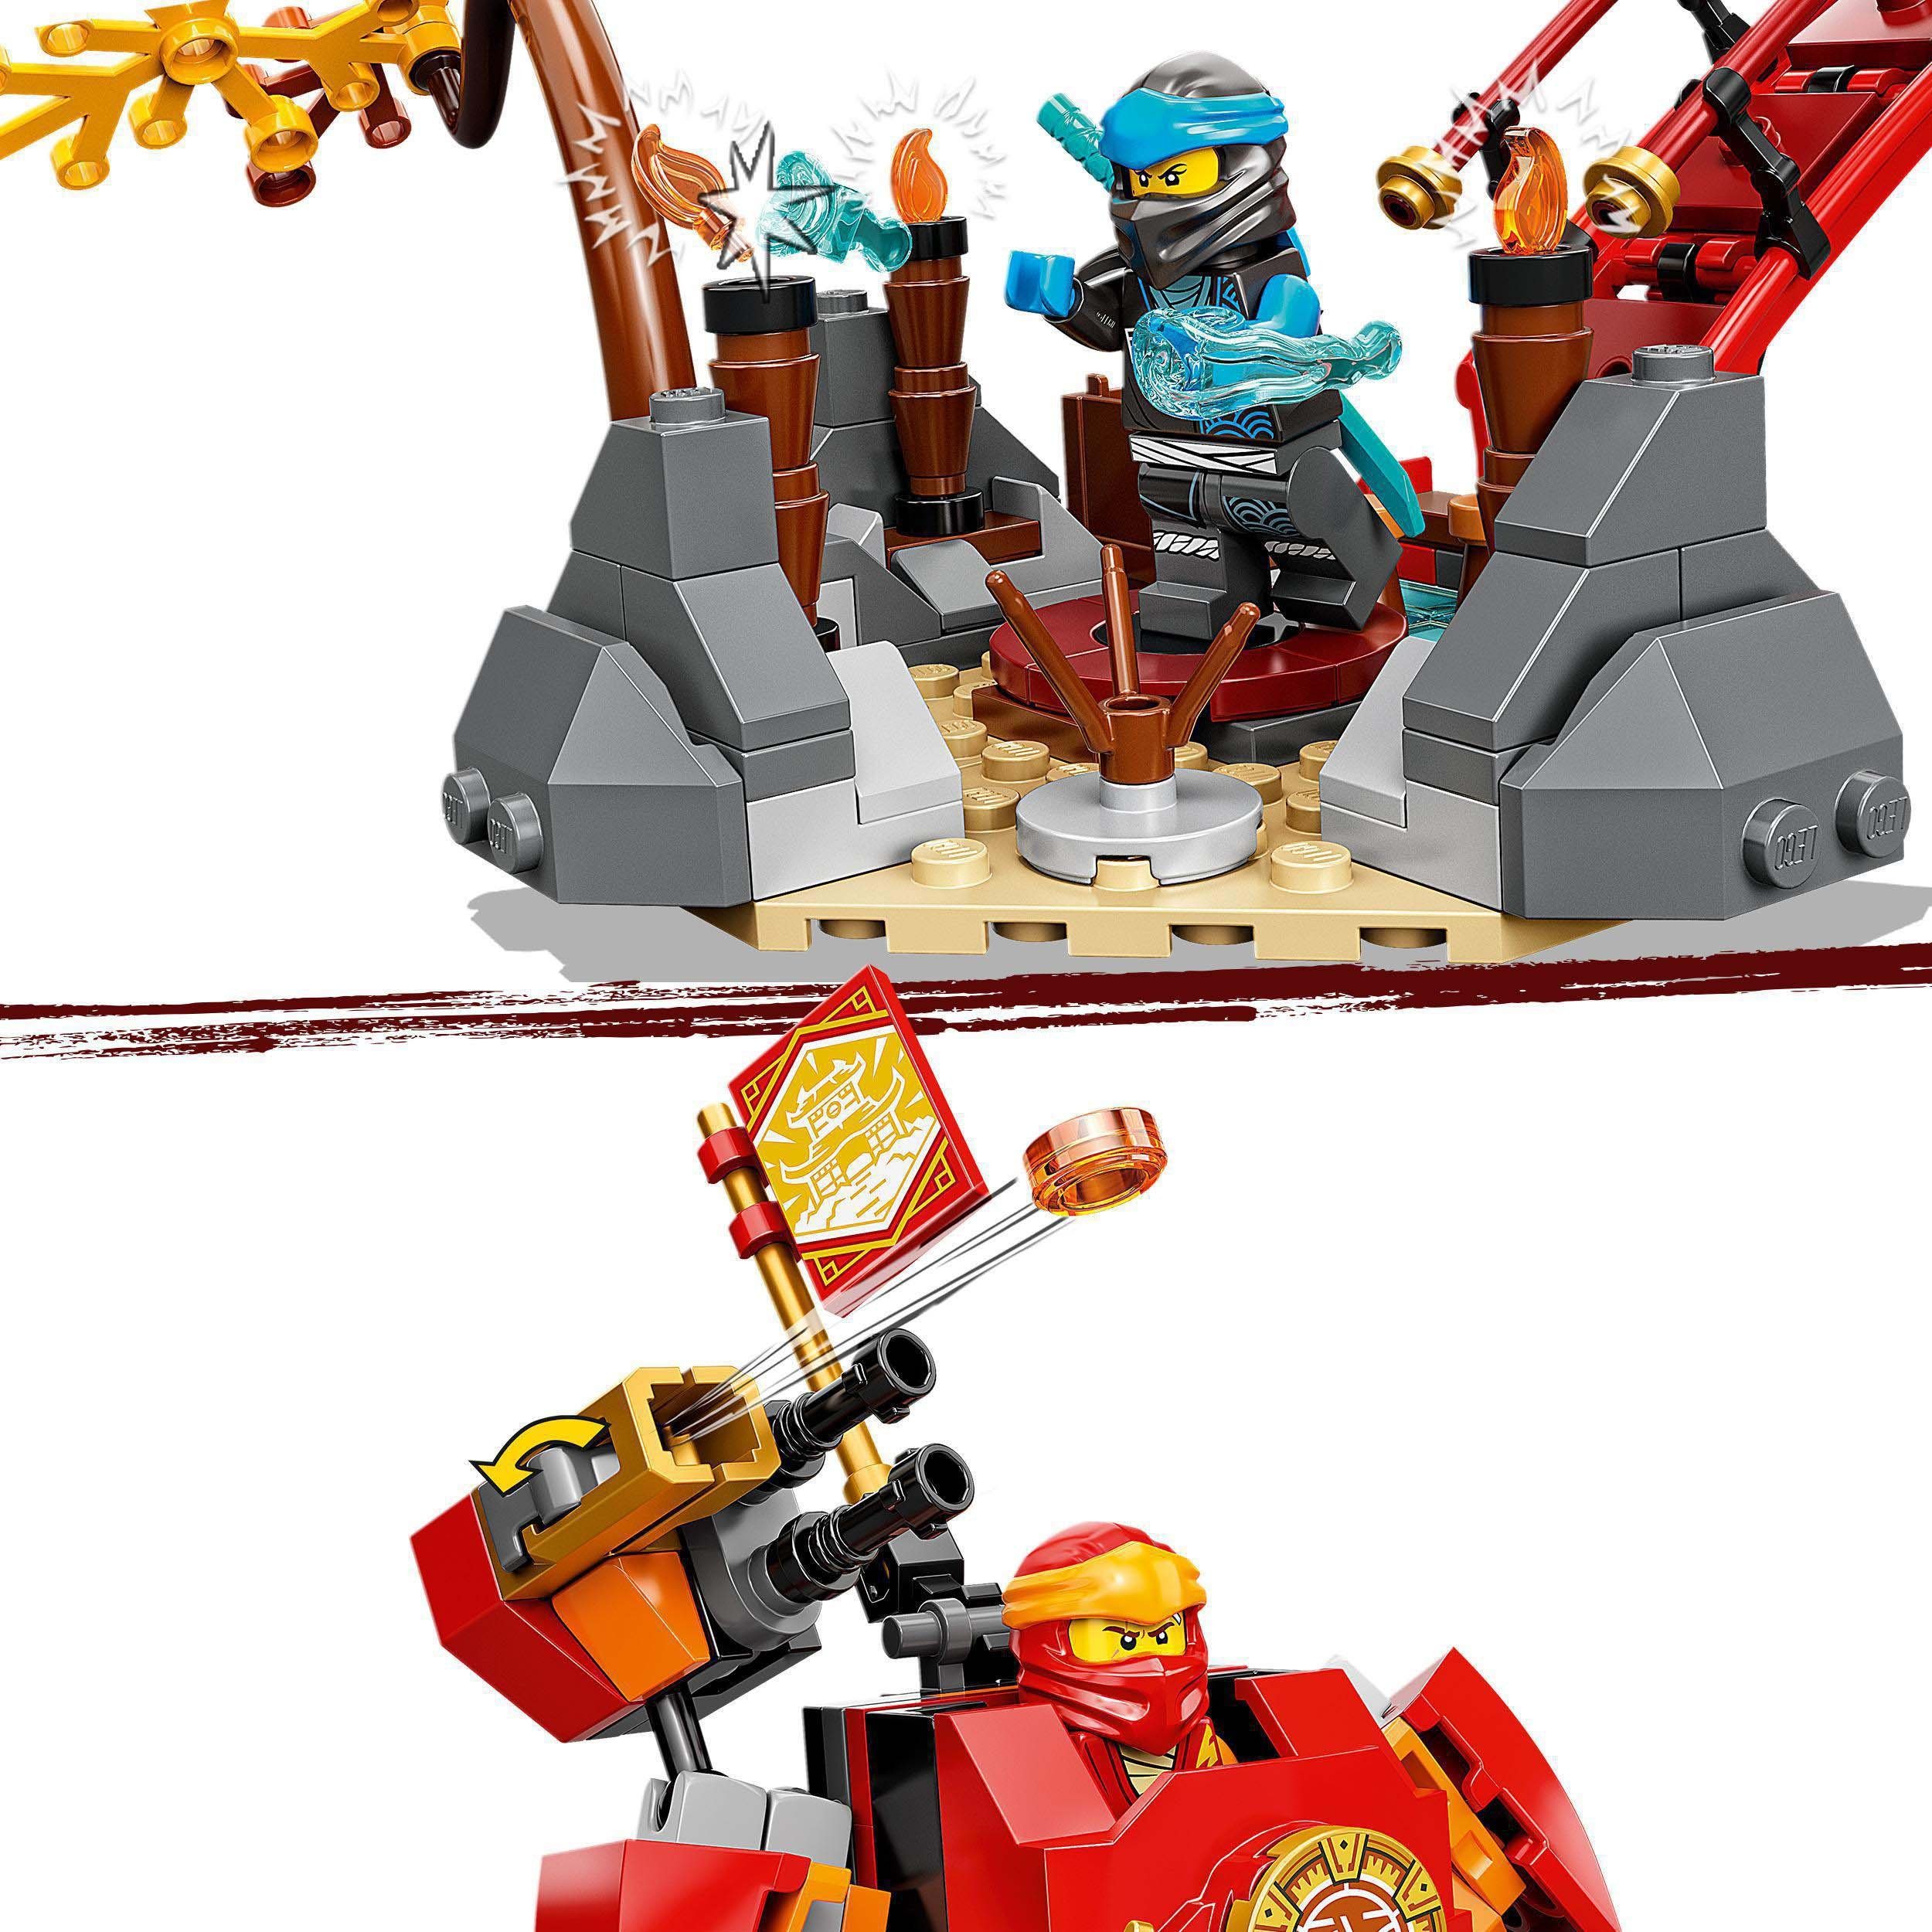 (71767), LEGO® LEGO® Ninja-Dojotempel NINJAGO®, Konstruktionsspielsteine (1394 St)